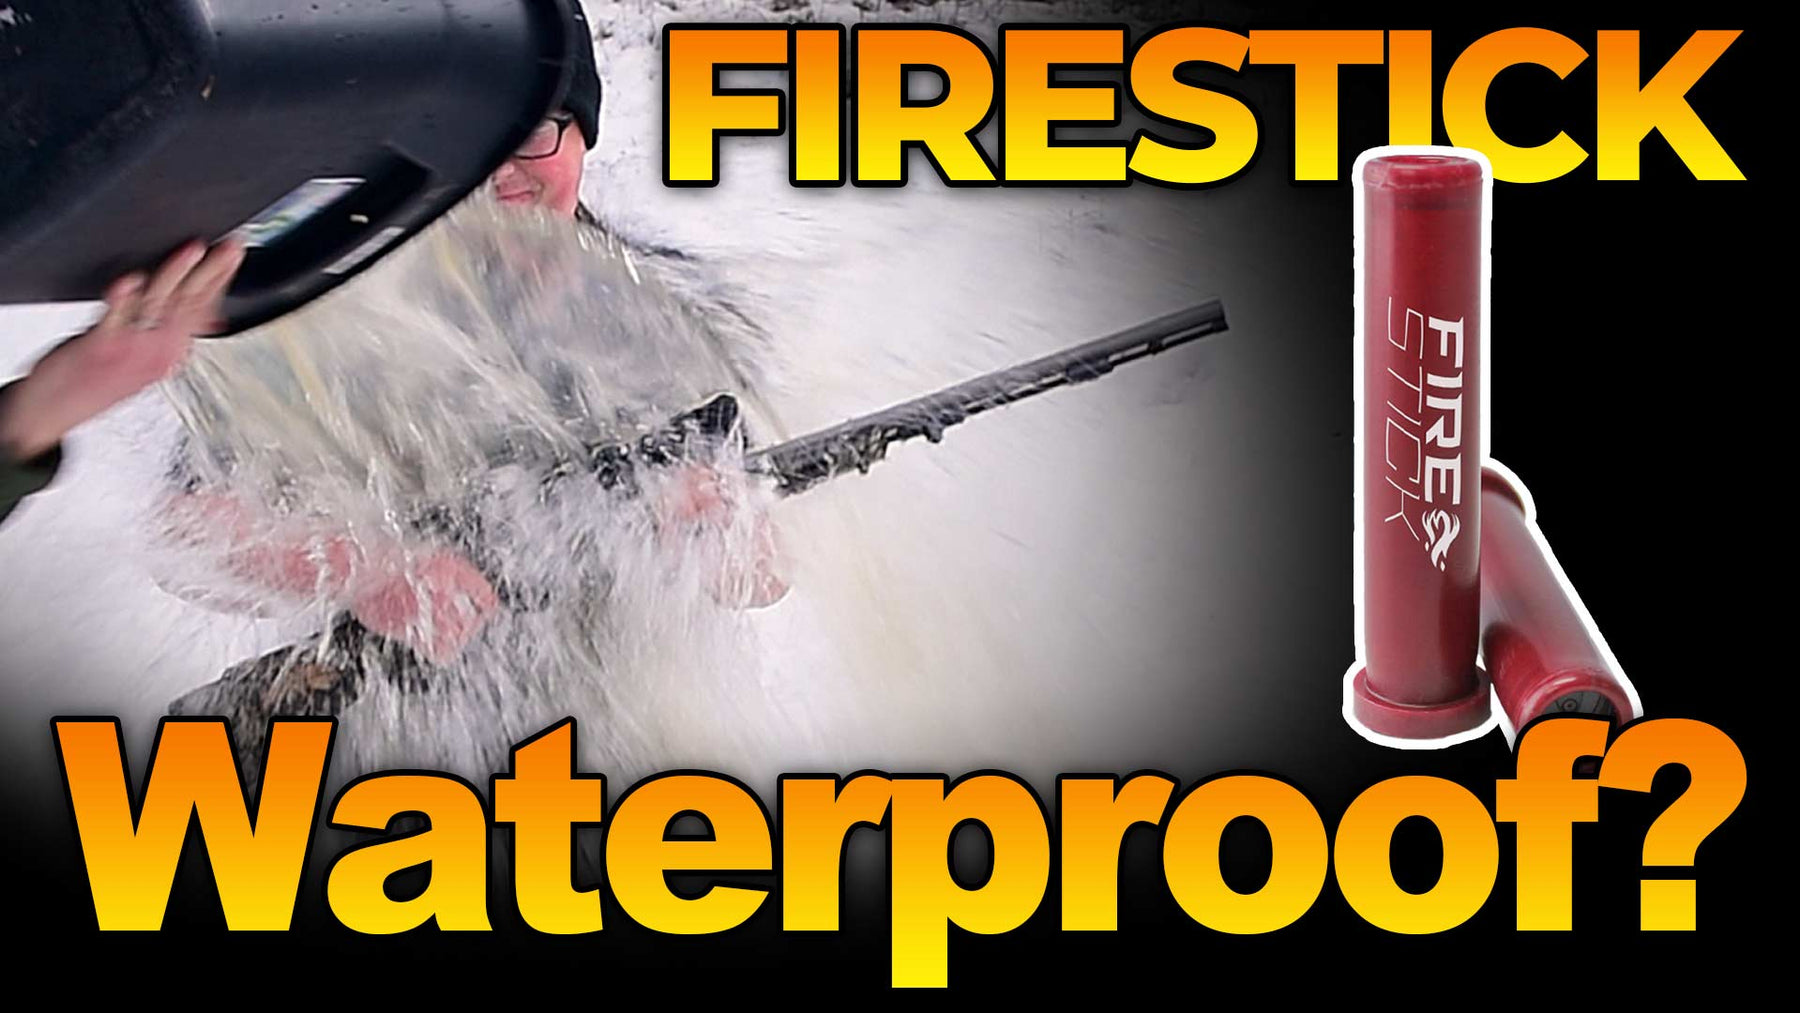 Is the Federal FireStick Waterproof?